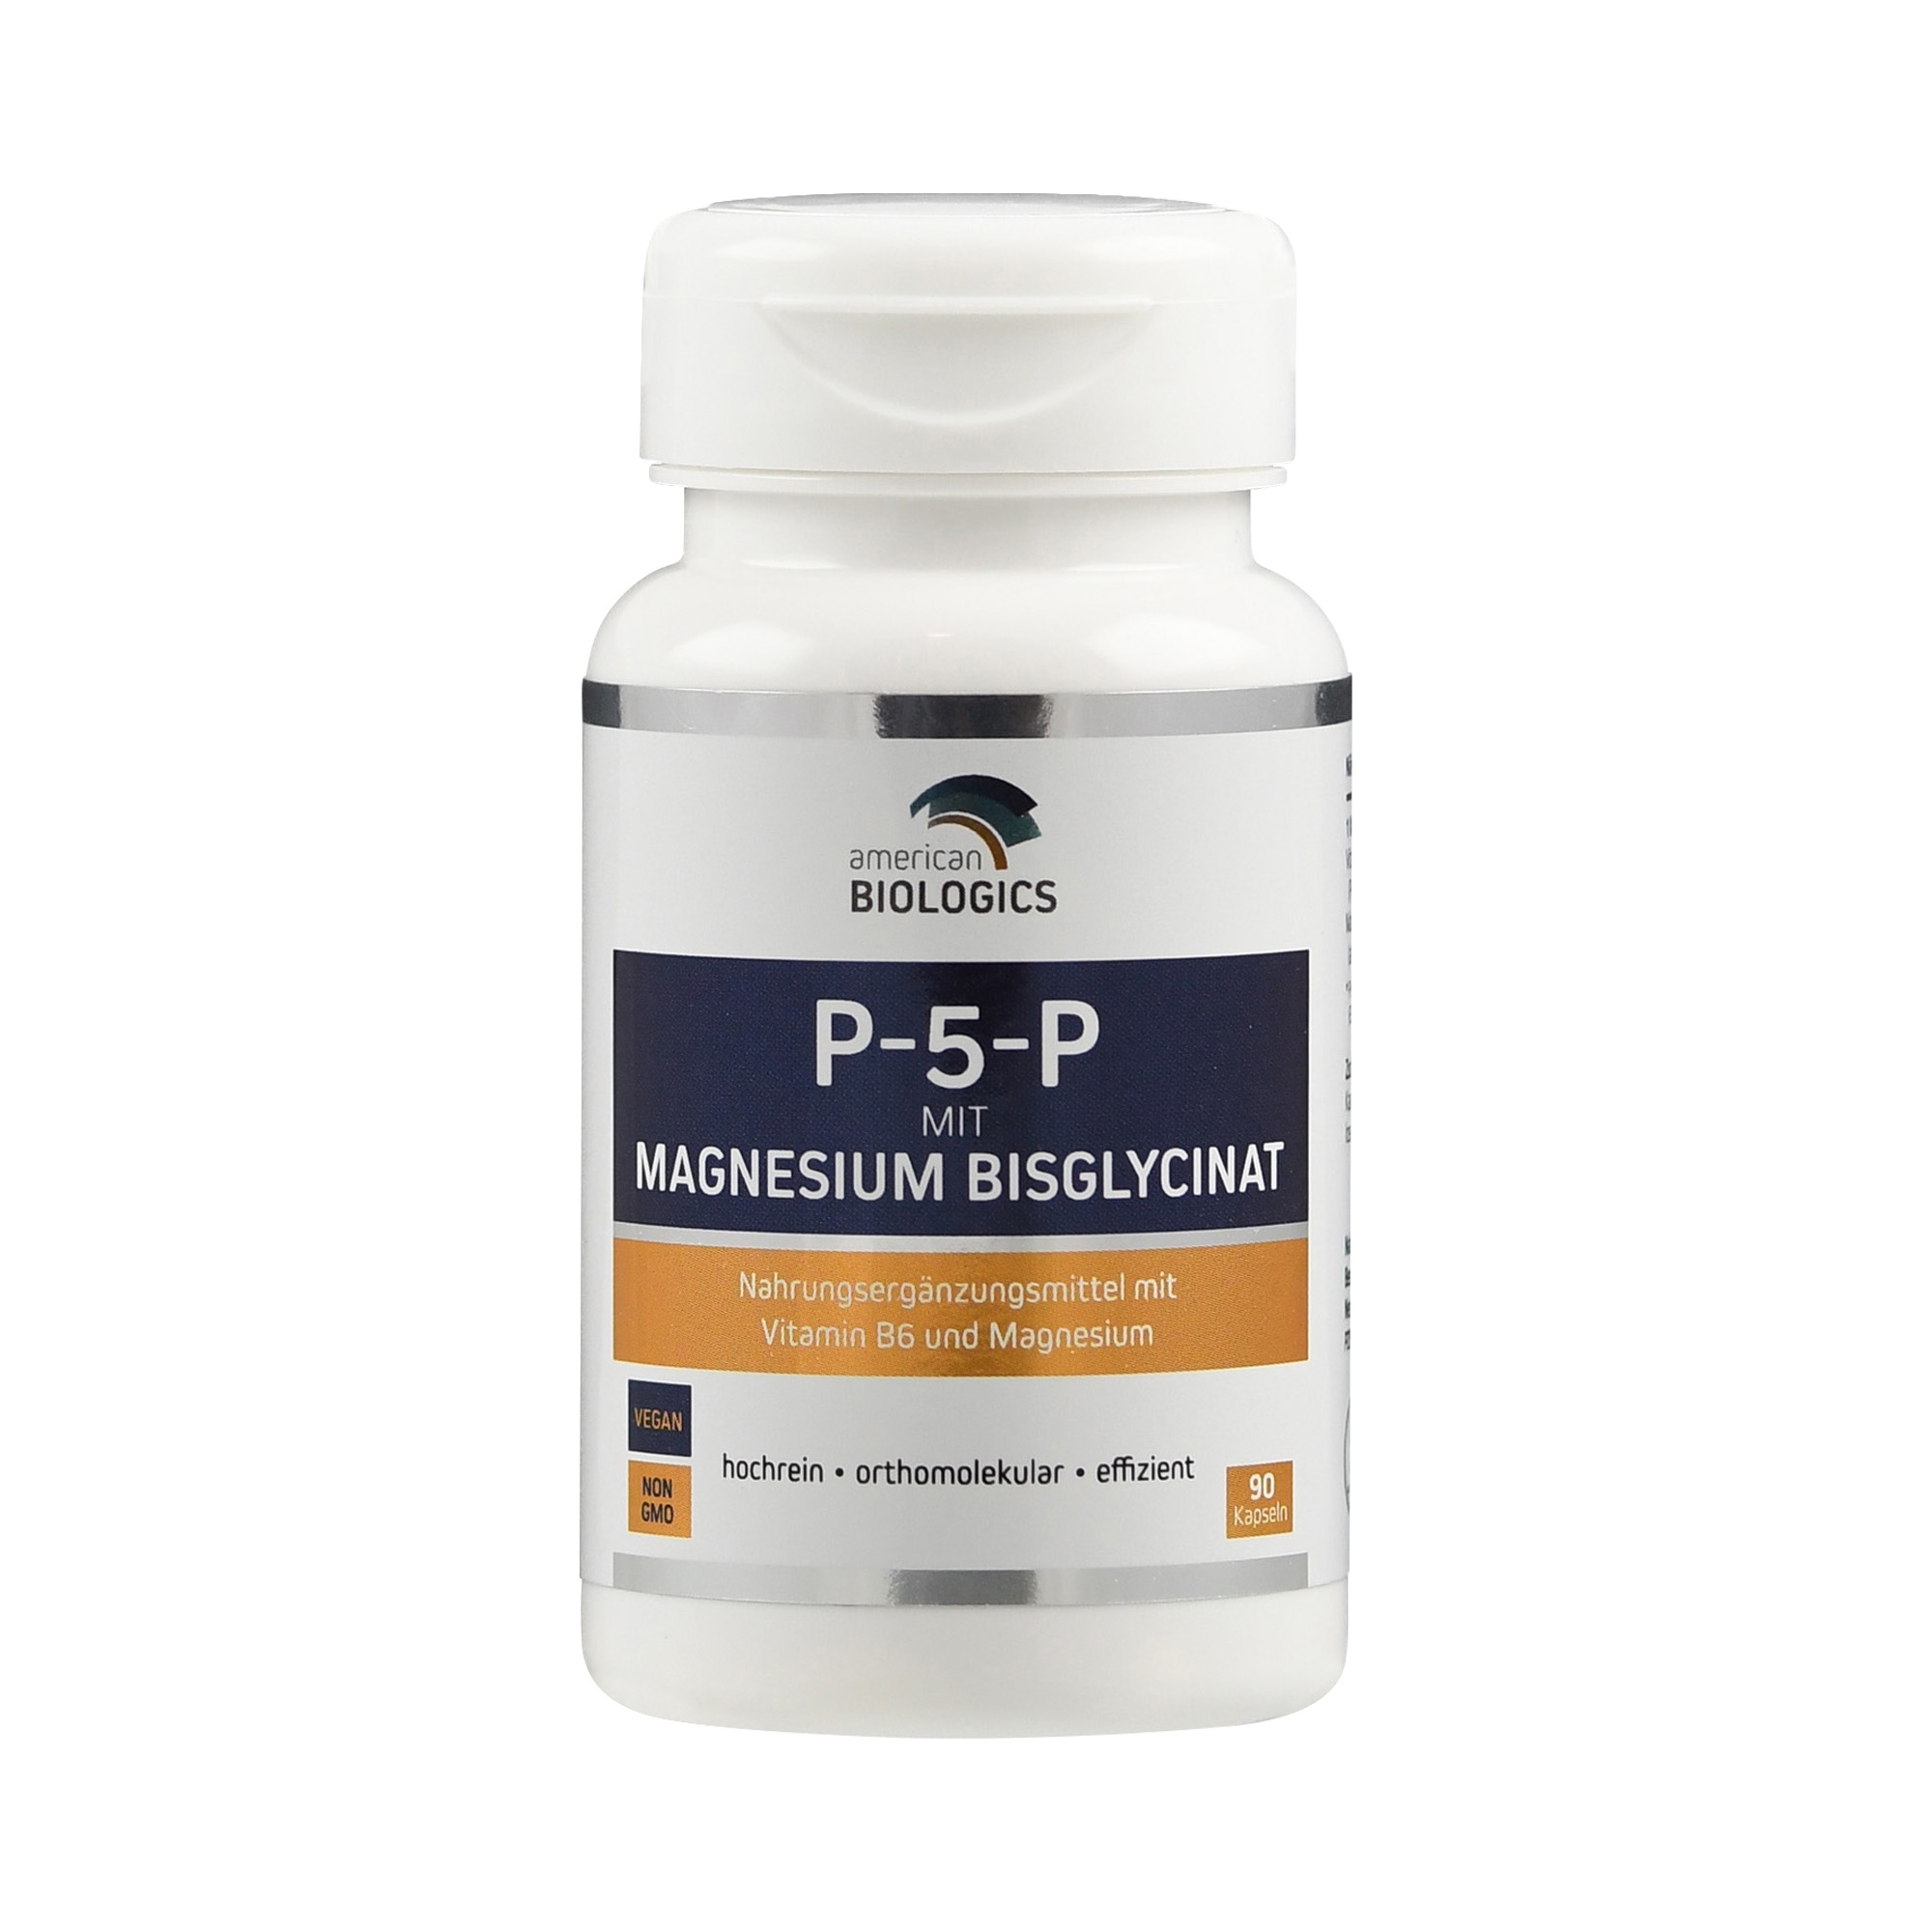 P-5-P mit Magnesium Bisglycinat